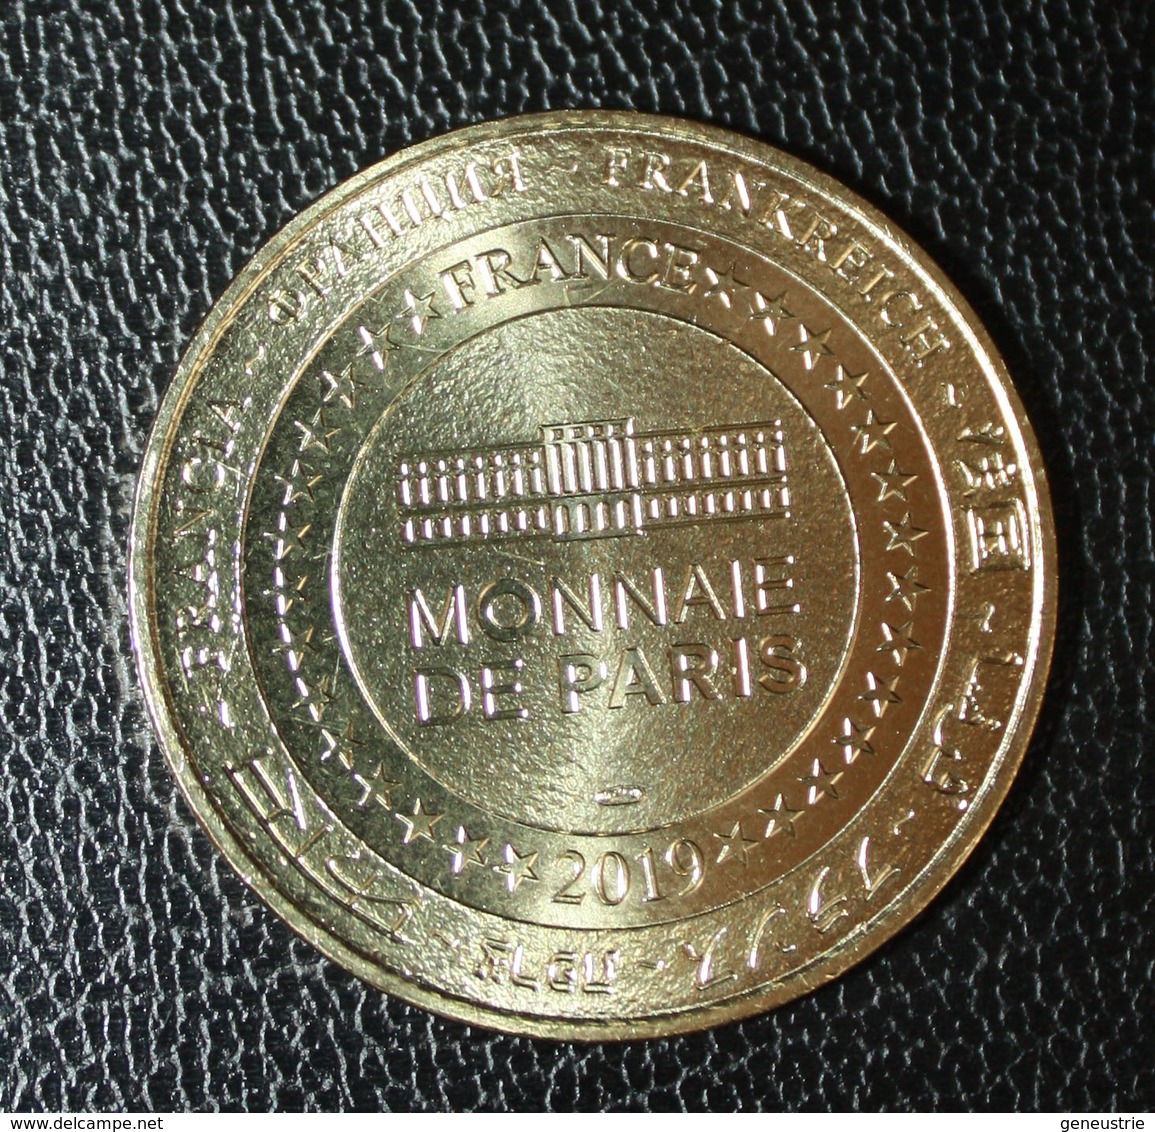 Nouveau ! Médaille Touristique (Monnaie De Paris) "Historial Jeanne D'Arc / Rouen / Normandie / 2019" - 2019